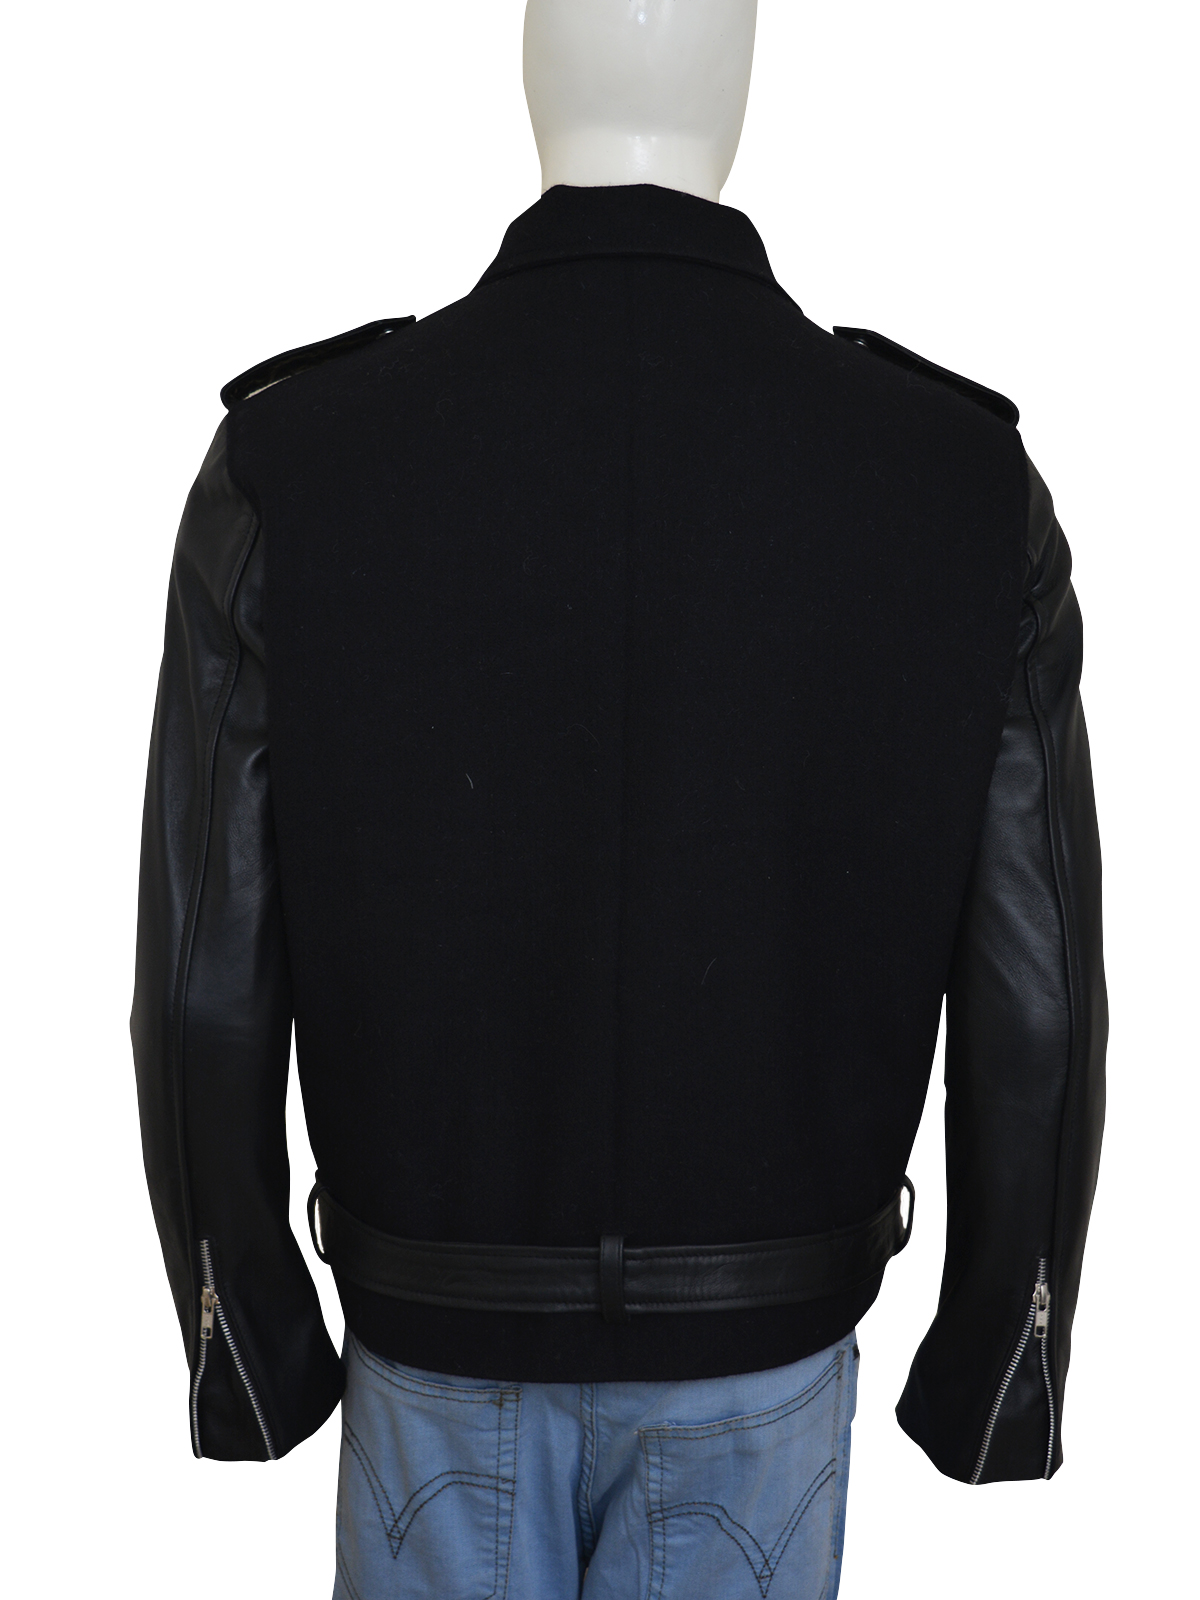 Stylish-Wool-And-Leather-Jacket